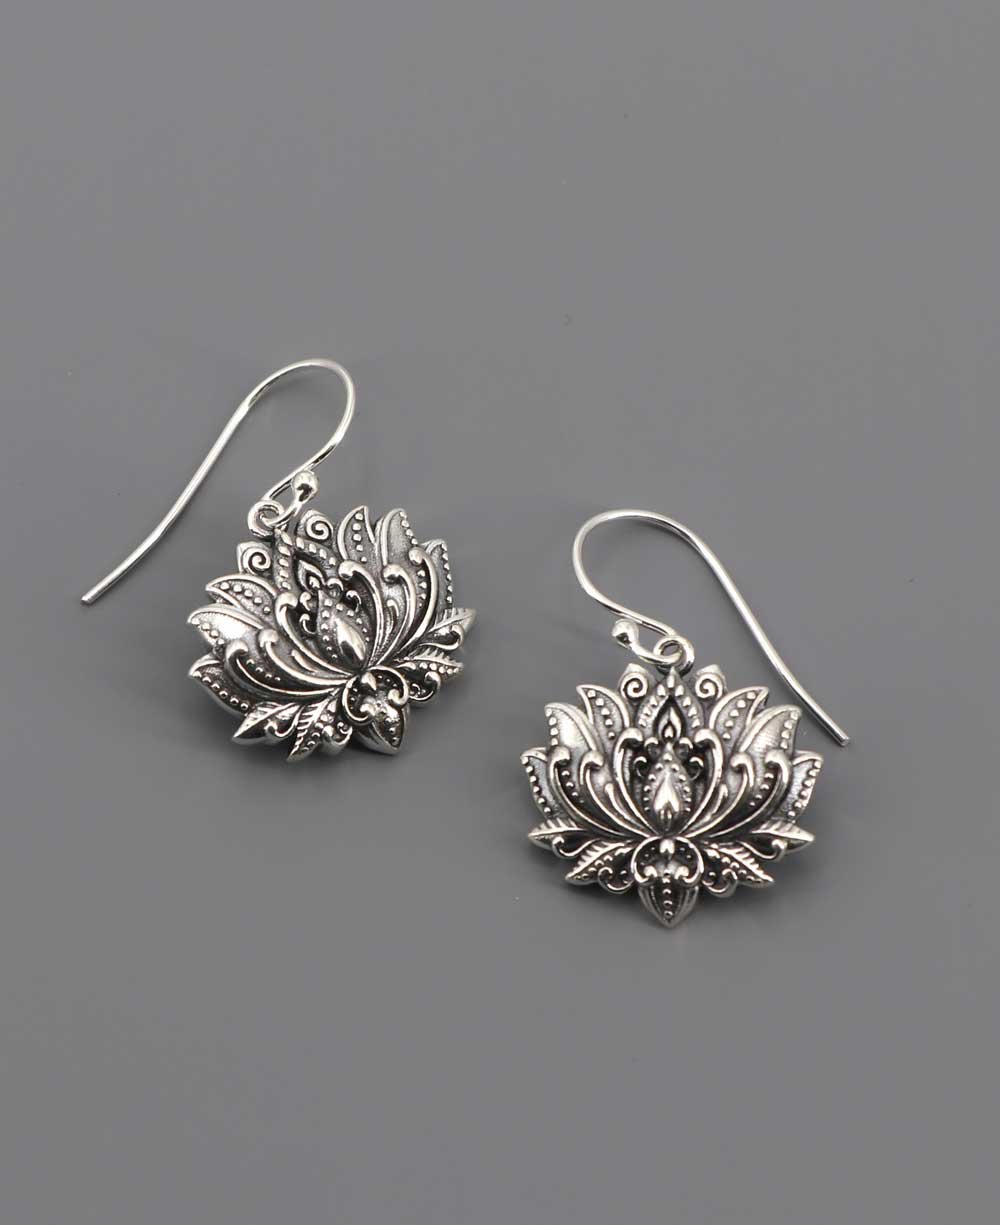 Blooming Sterling Silver Lotus Earrings - Earrings